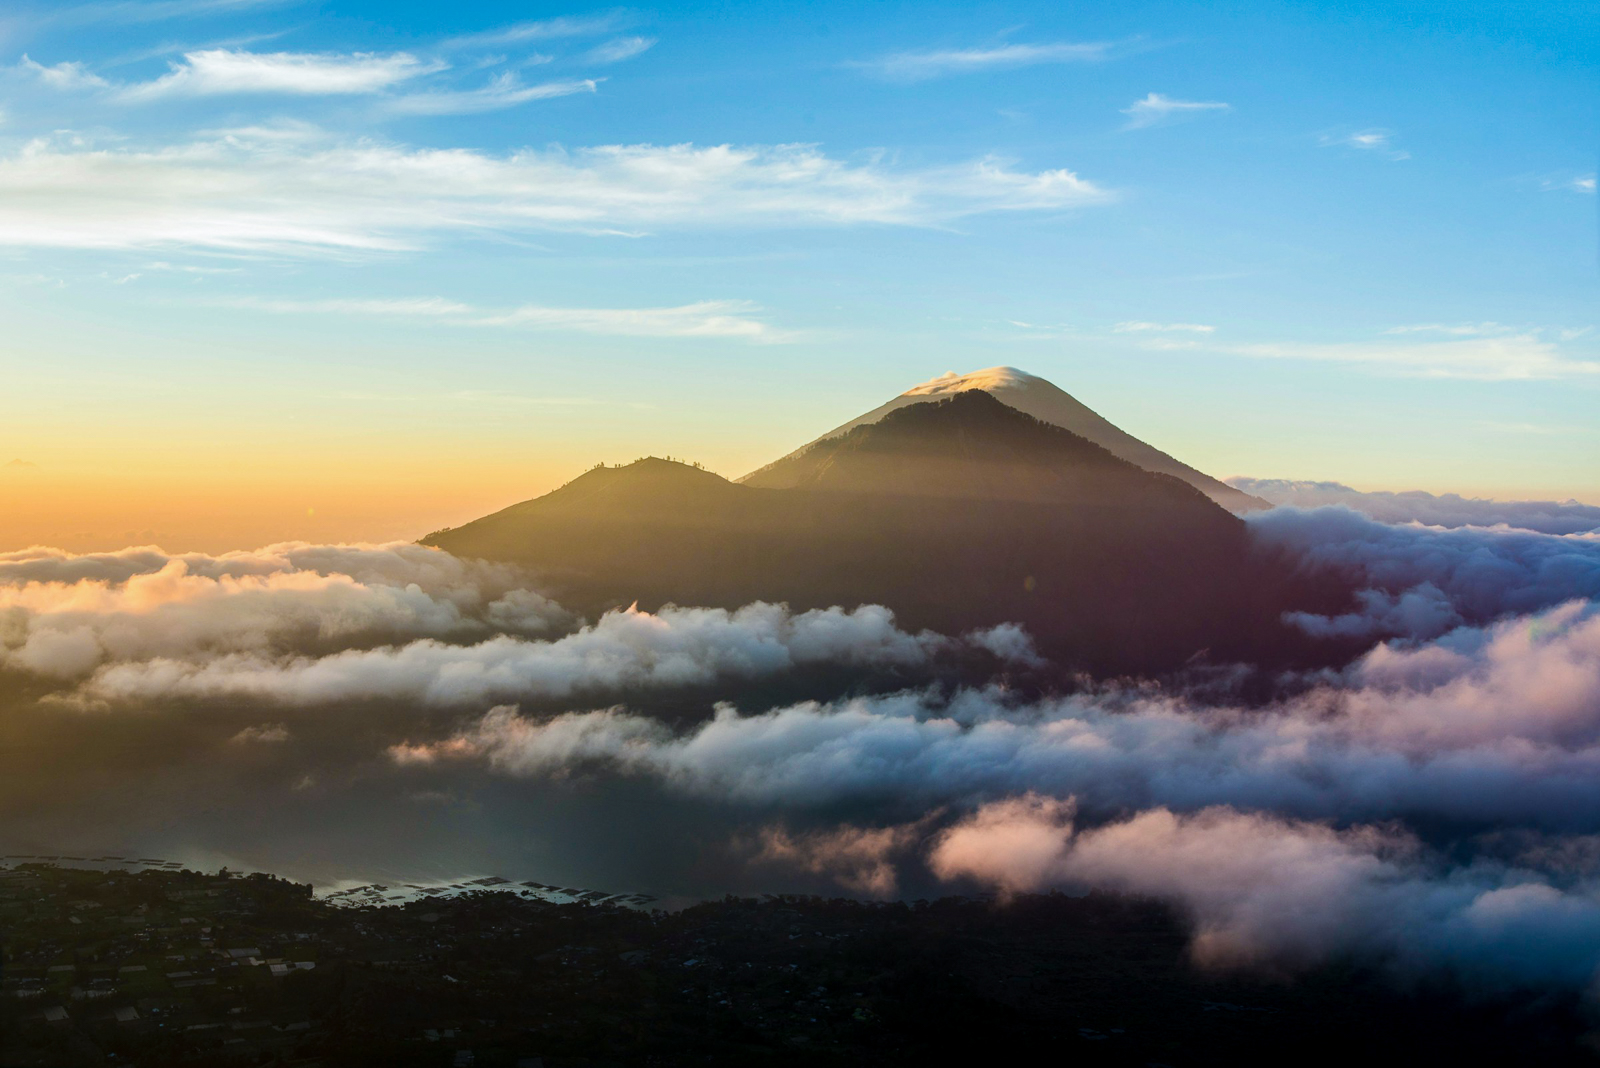 Sunset over Mount Batur in Indonesia